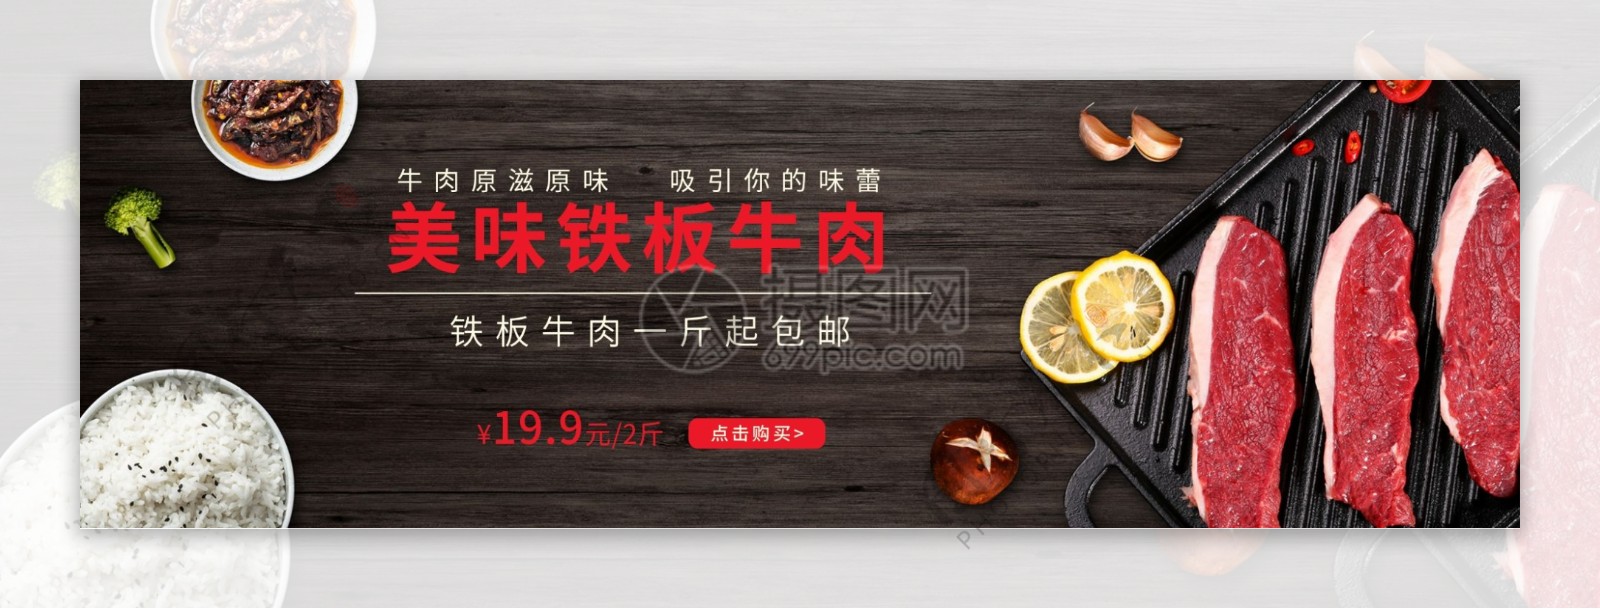 铁板牛肉淘宝banner设计